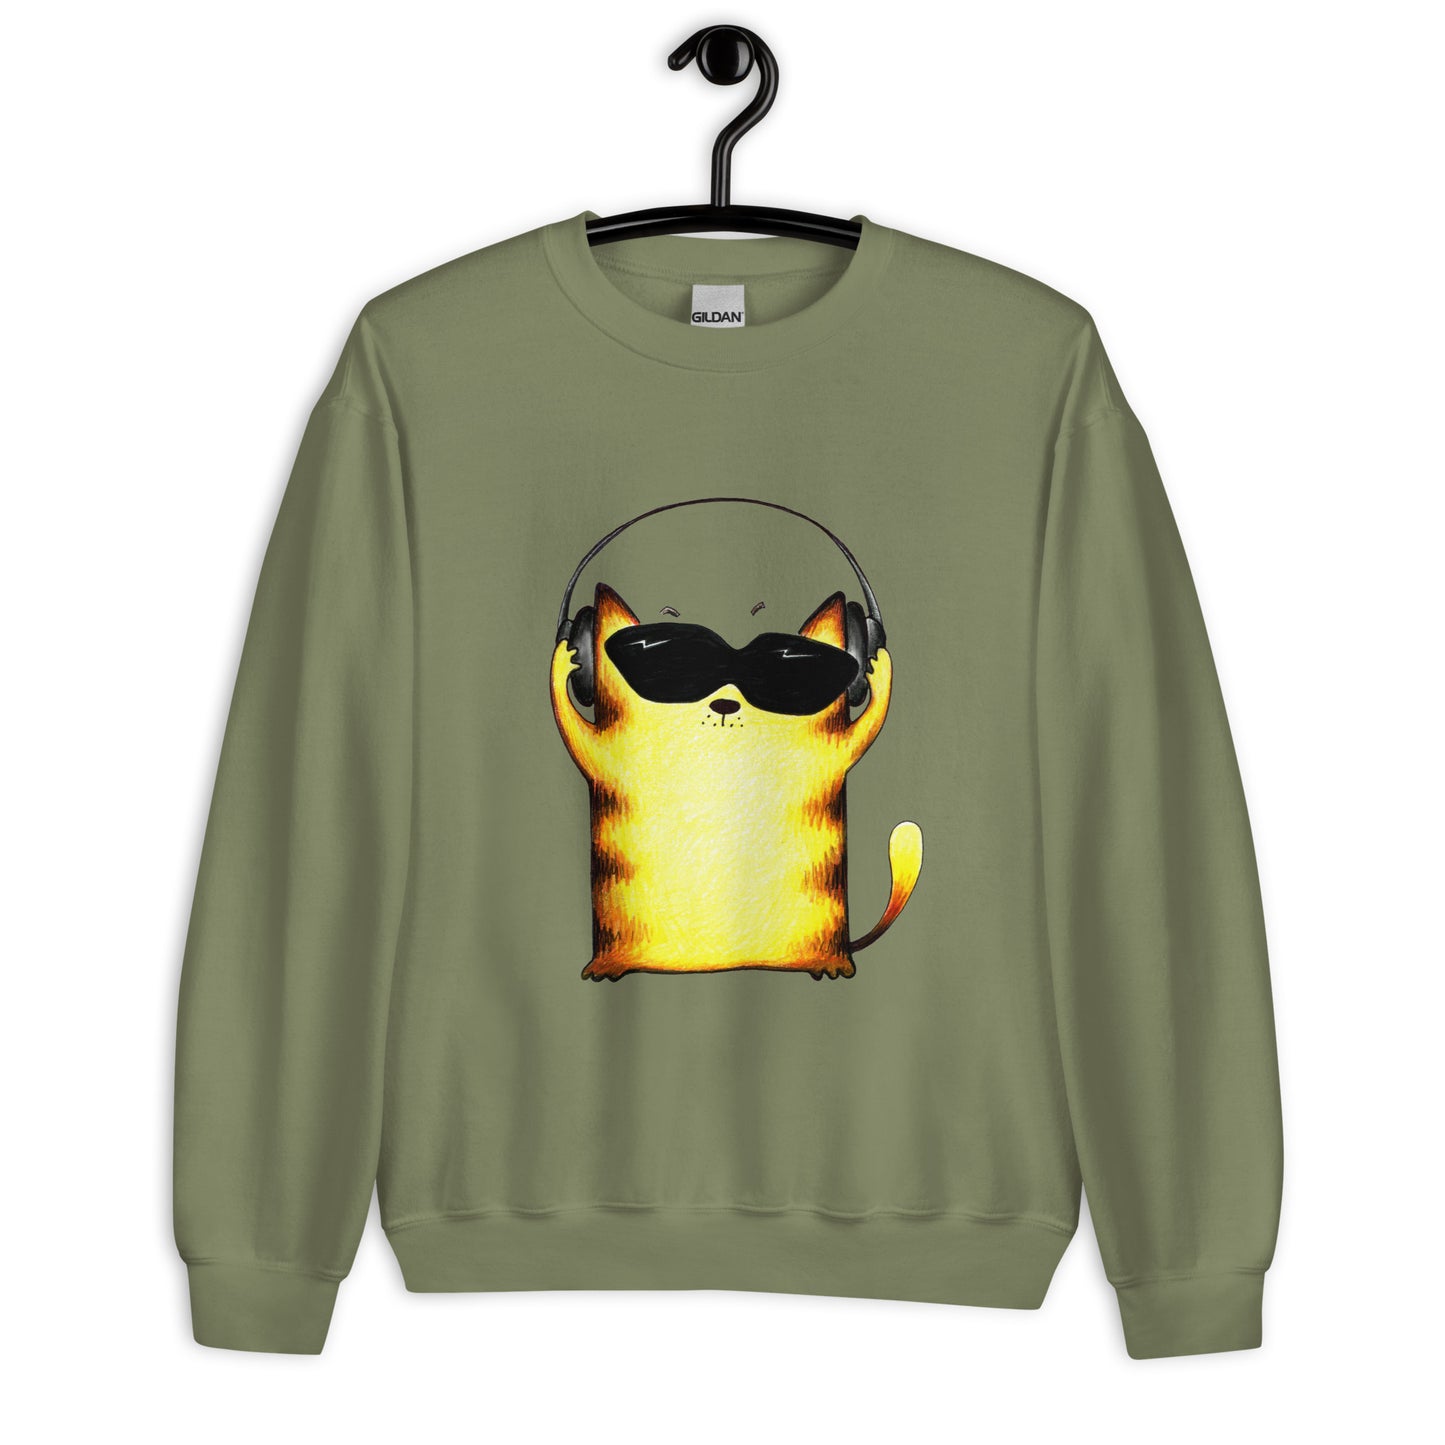 Green men's sweatshirt with yellow cats and headphones